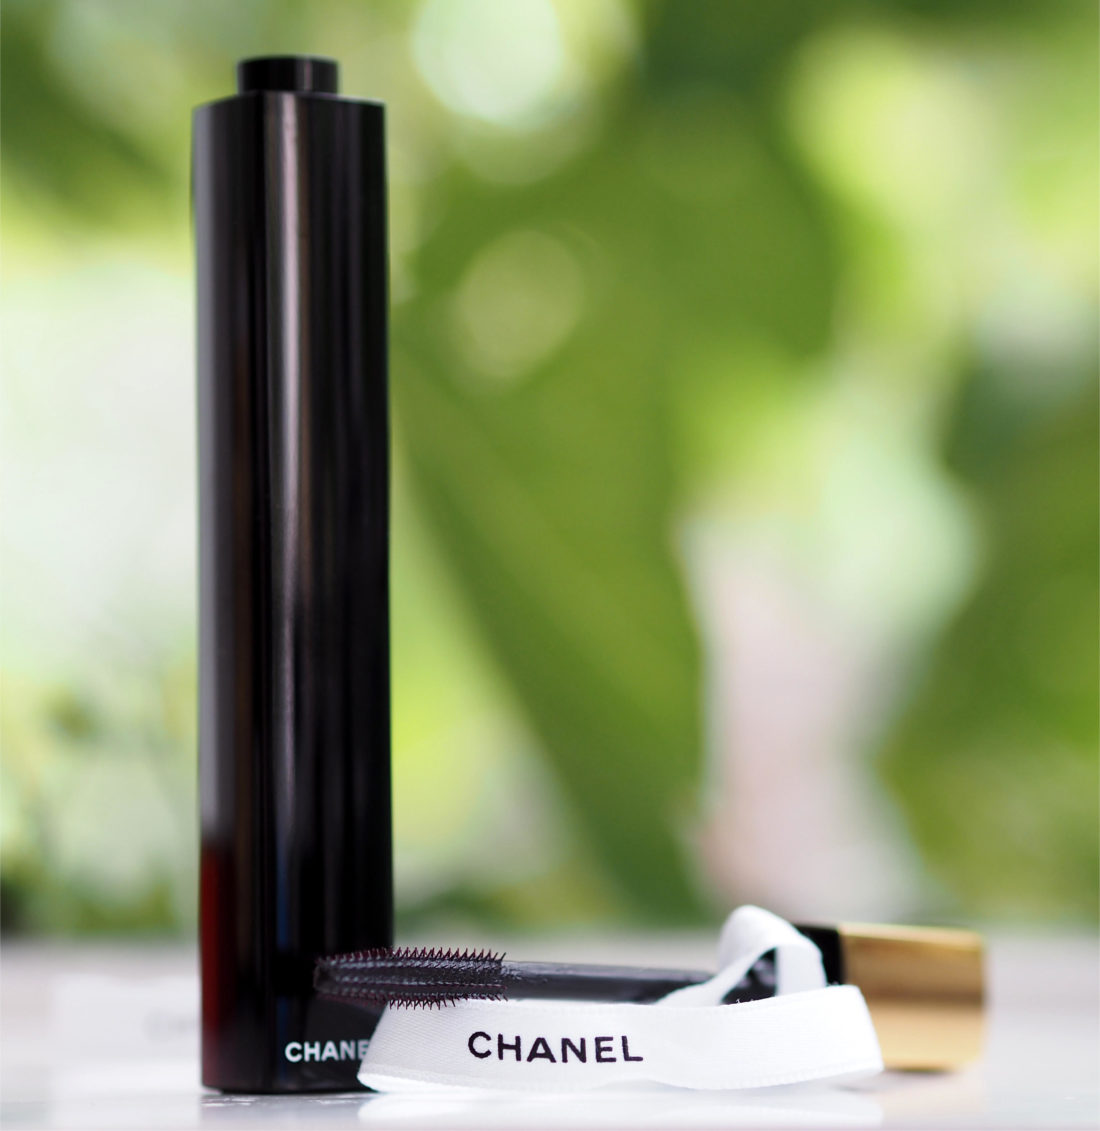 Chanel Le Volume de Chanel Mascara • Mascara Review & Swatches